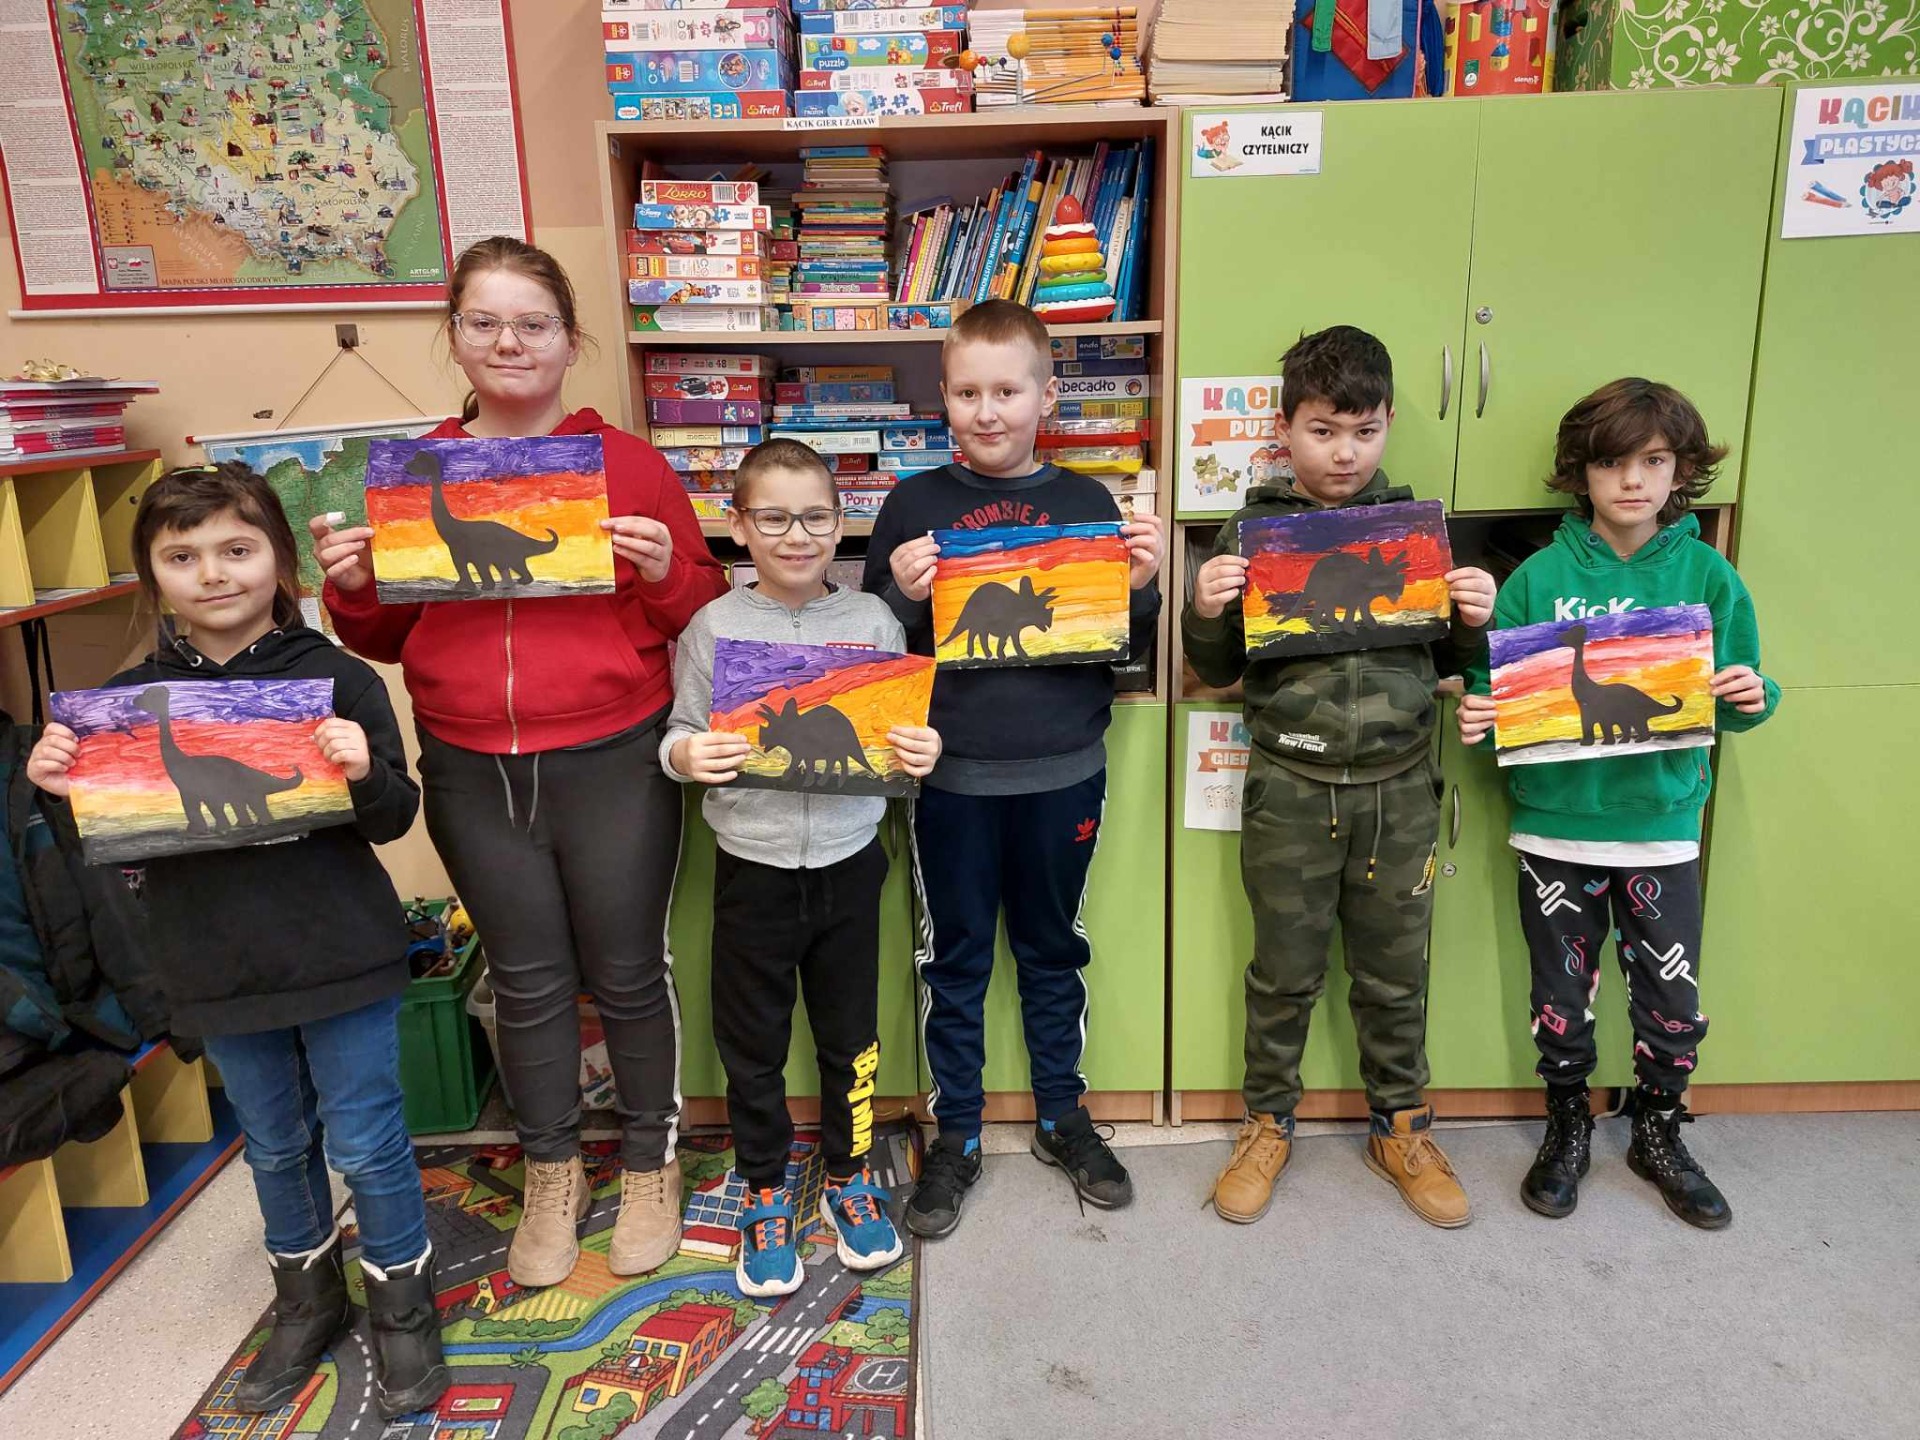 Uczniowie prezentują prace malowane wcześniej farbami